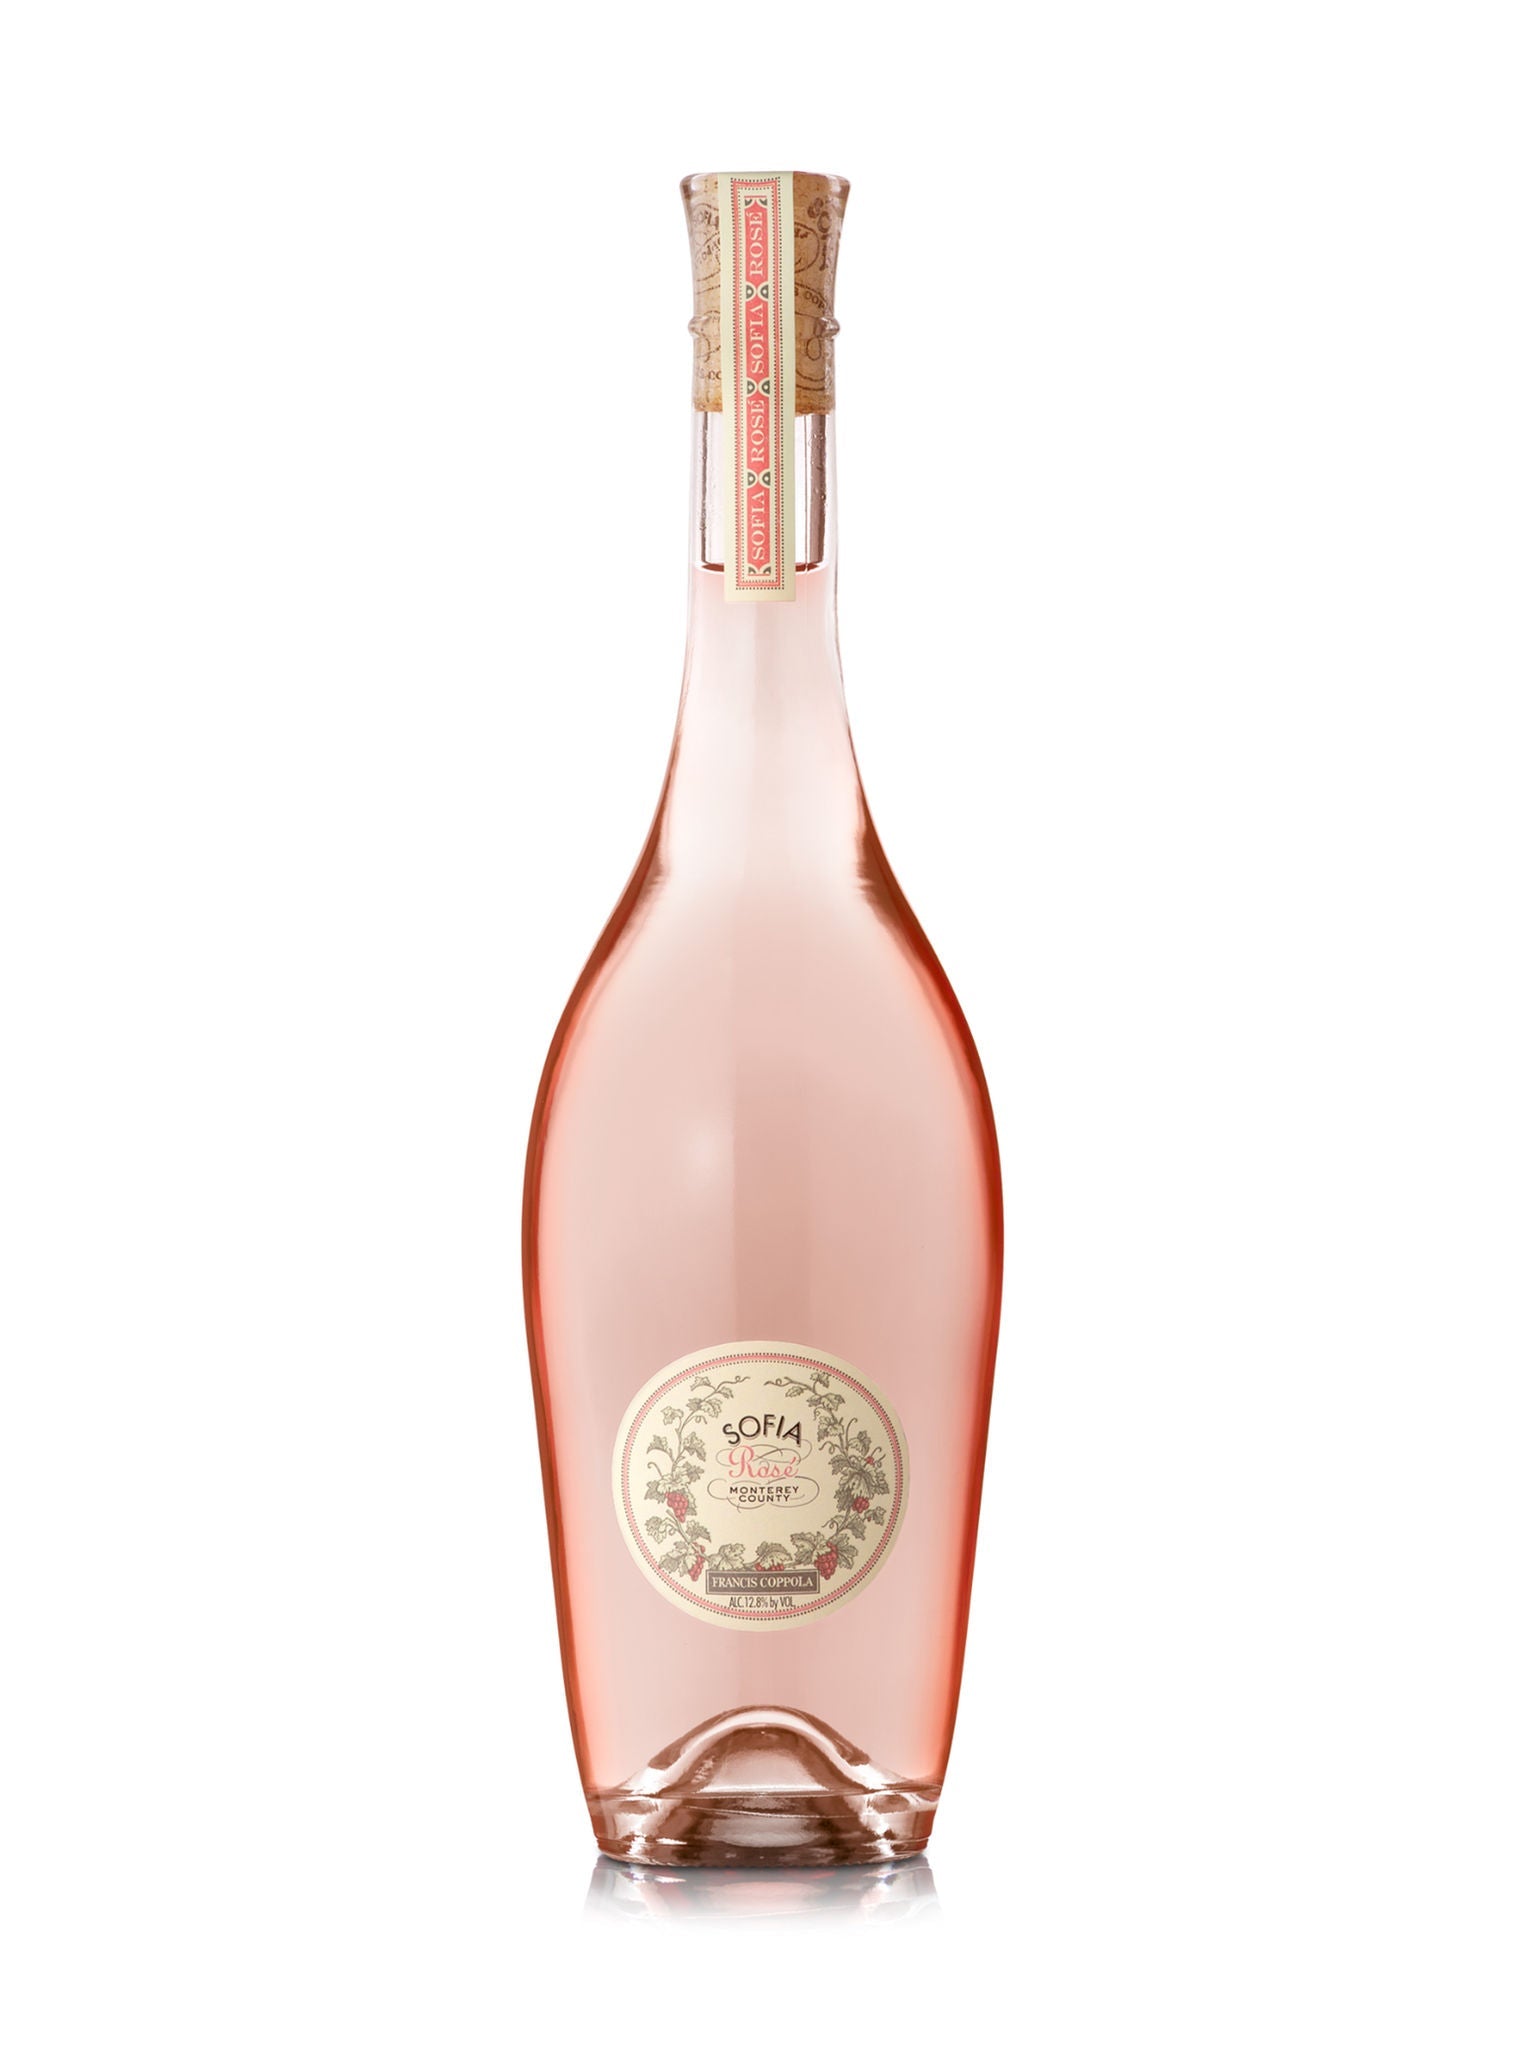 Francis Coppola Sofia Rosé | Exquisite Wine & Alcohol Gift Delivery Toronto Canada | Vyno